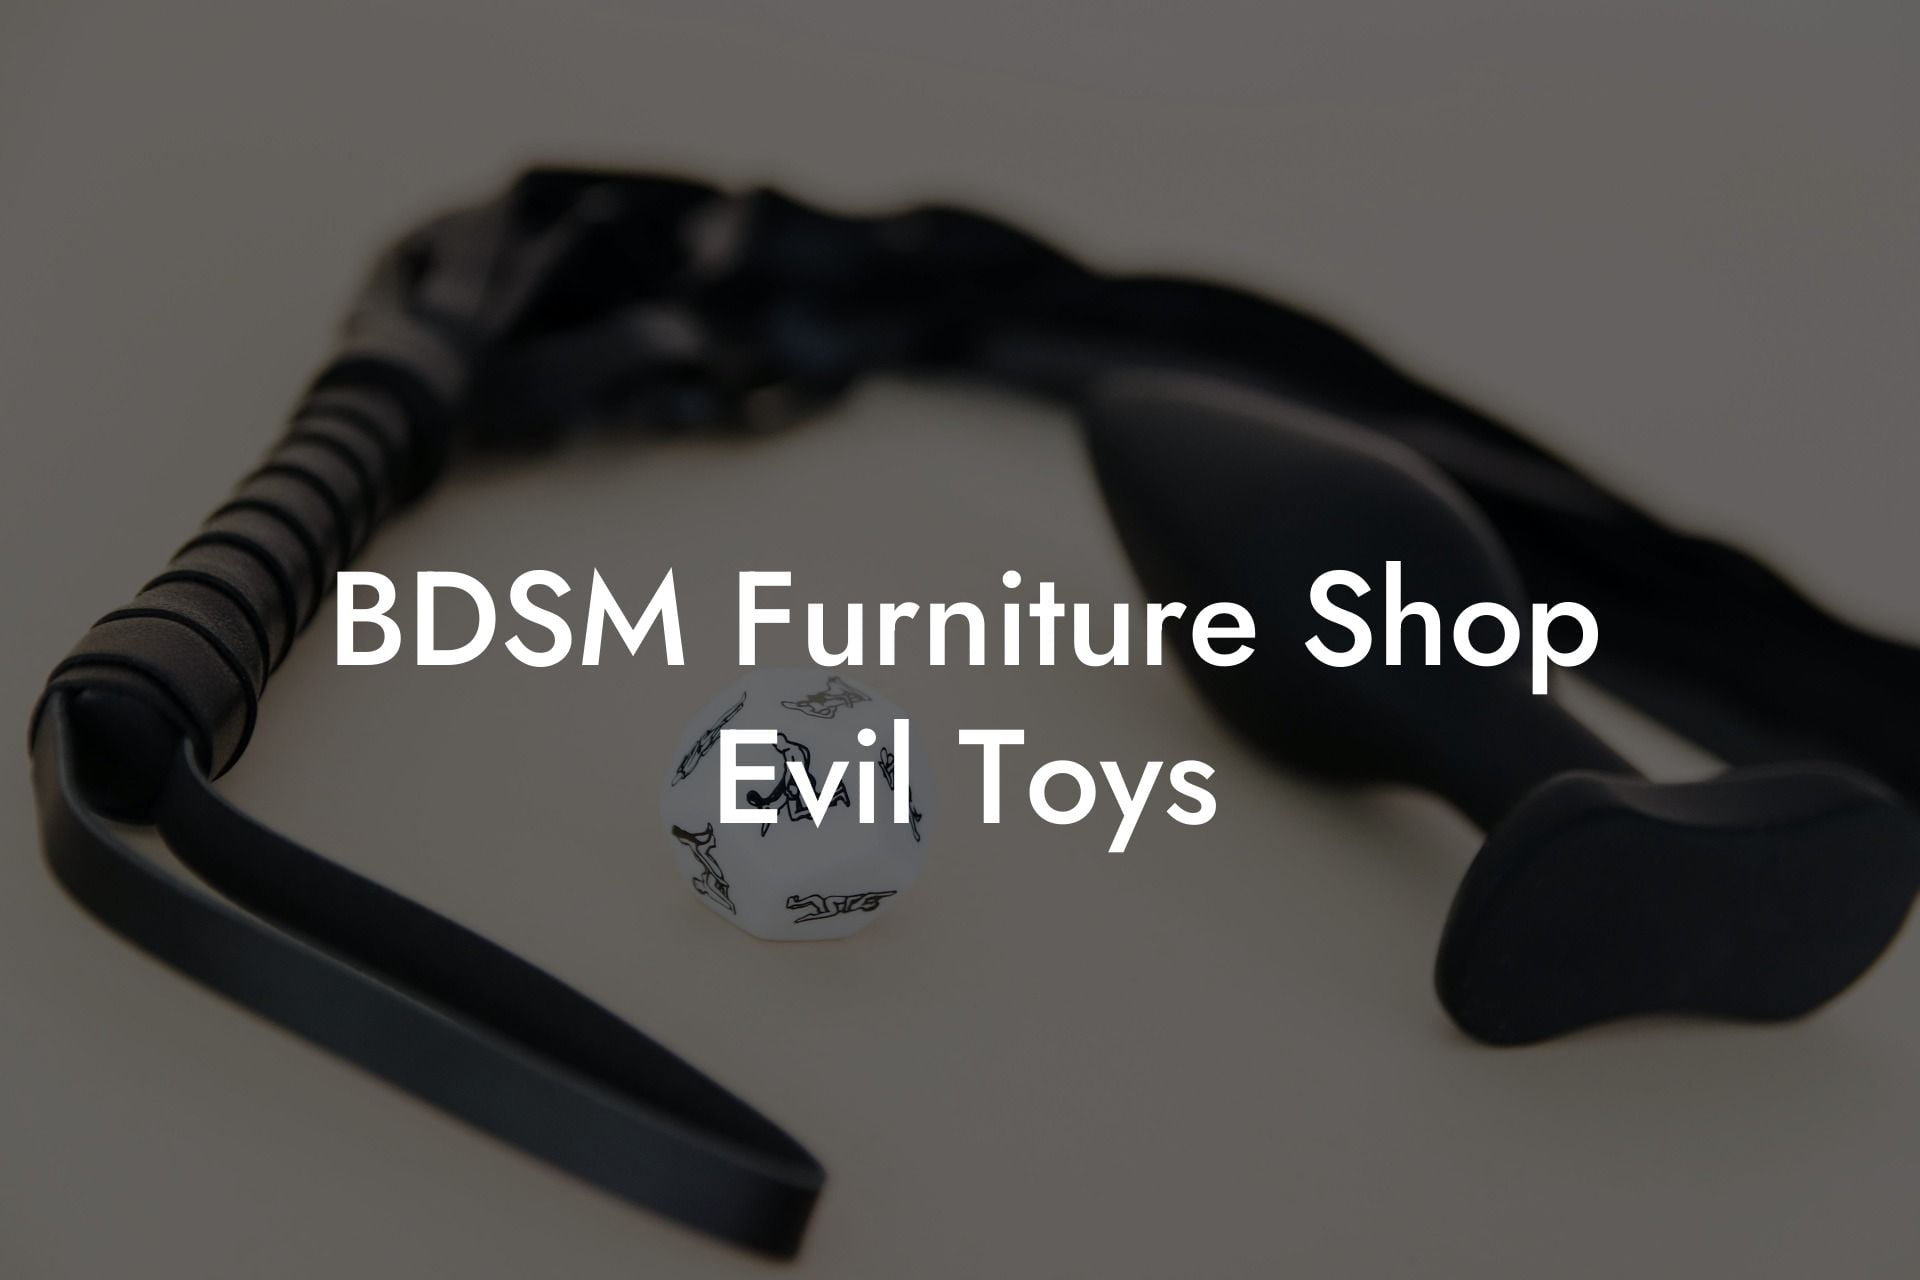 BDSM Furniture Shop Evil Toys